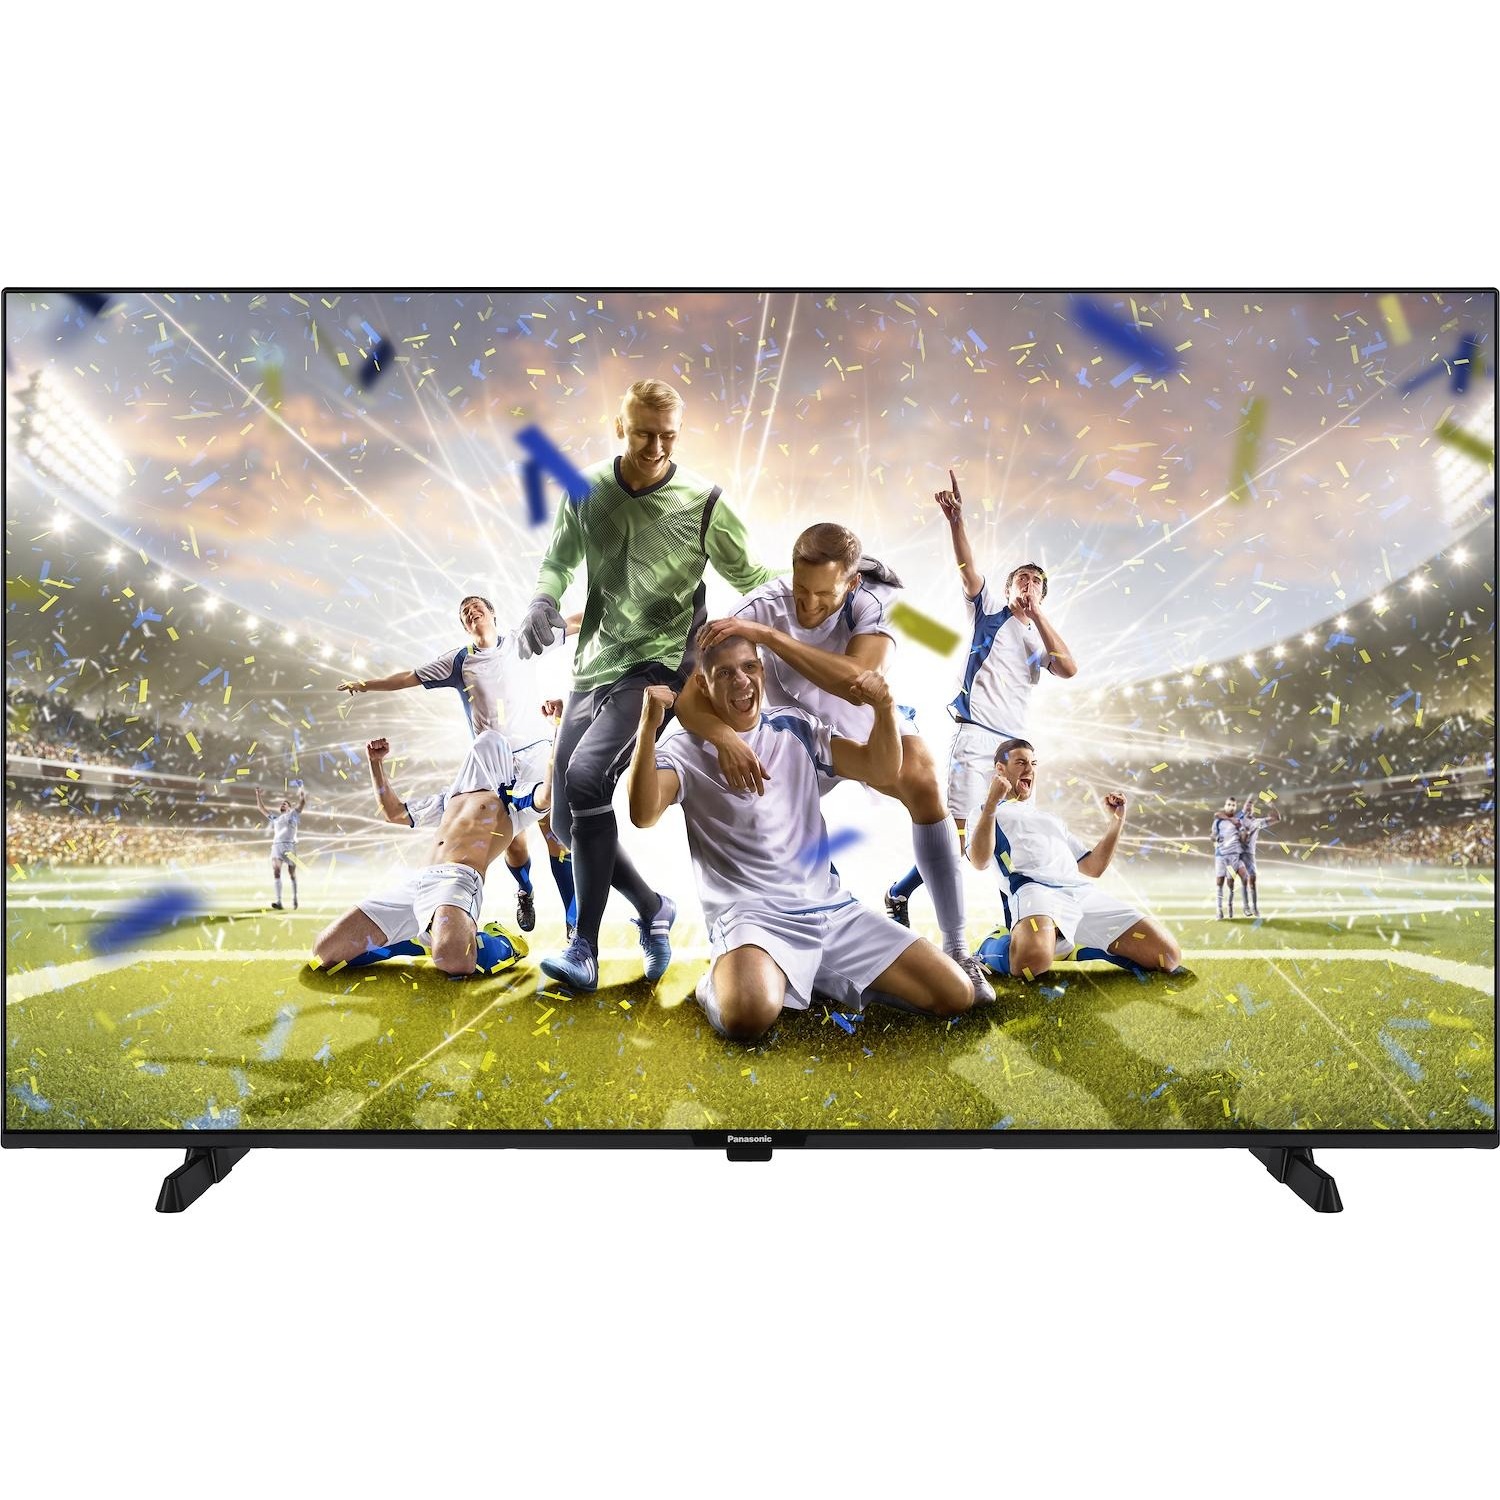 Immagine per TV LED Smart Panasonic 65MX600E calibrato 4K e UHD da DIMOStore